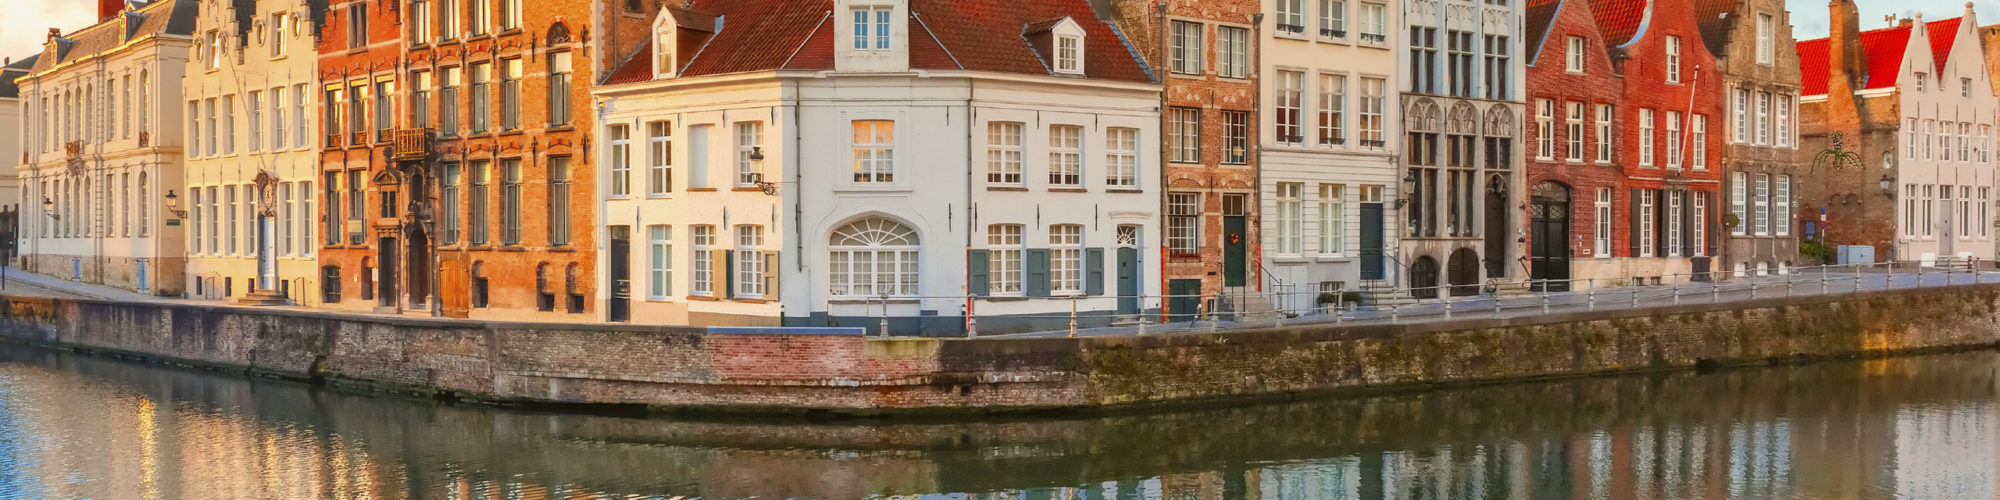 Bruges travel agents packages deals